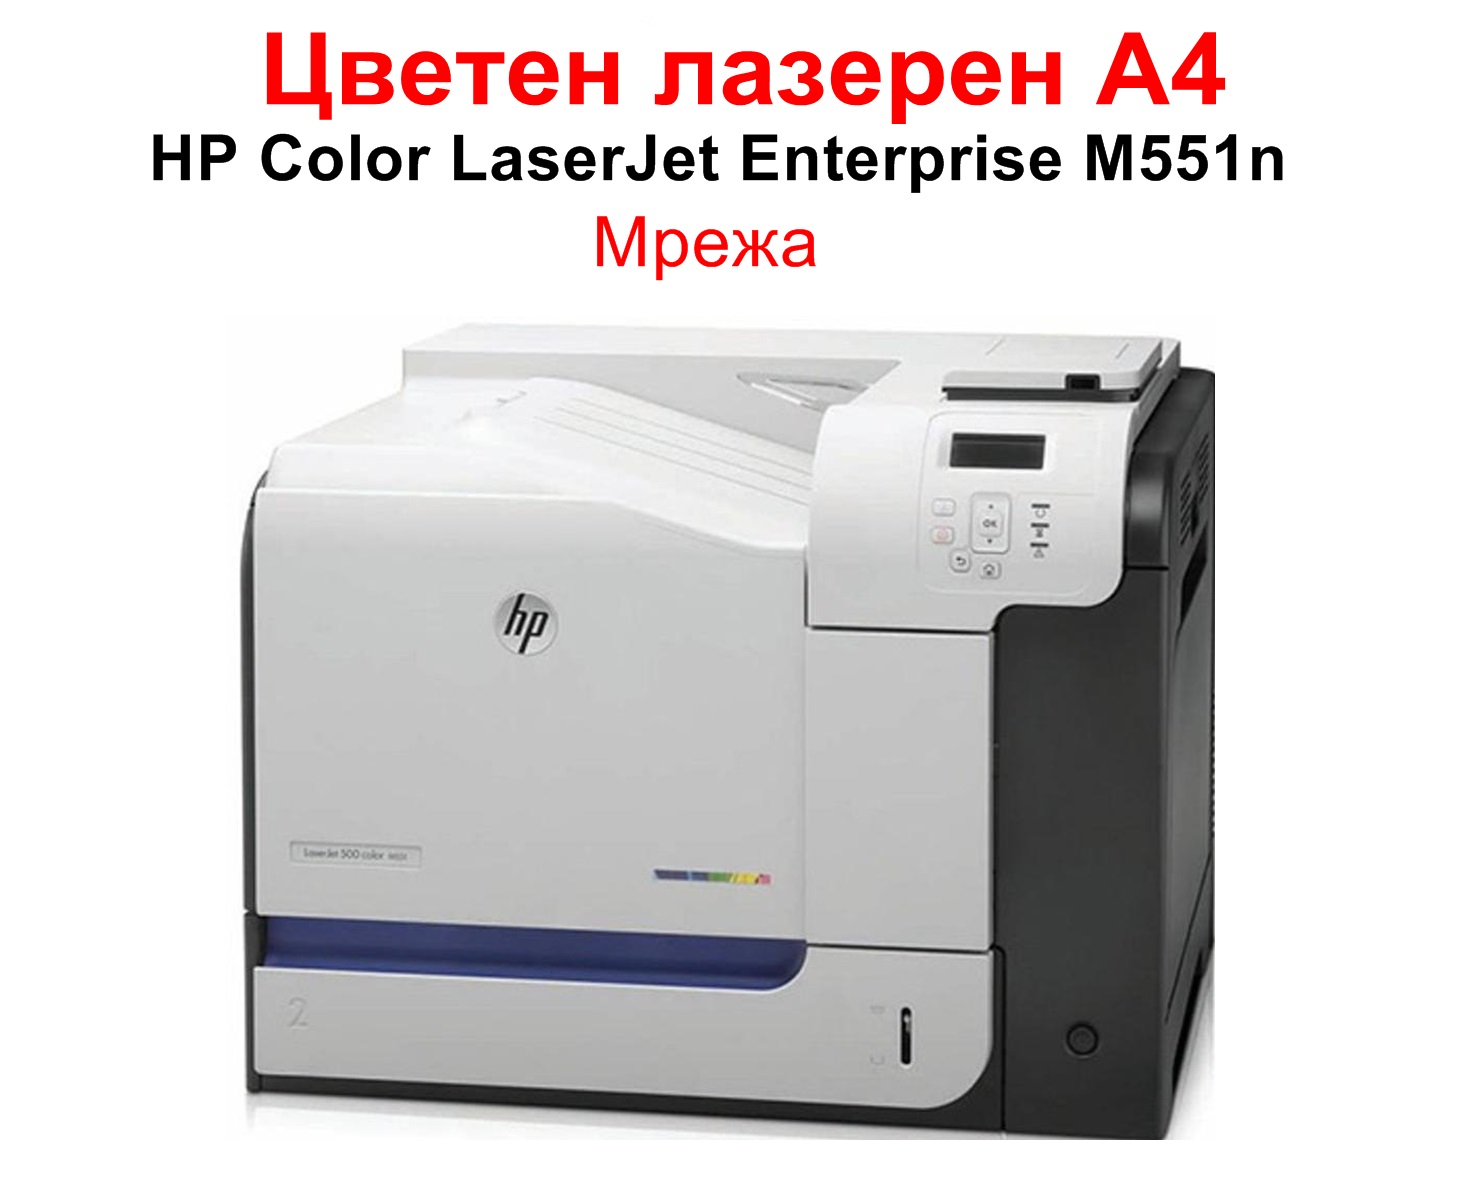 HP Color LaserJet Enterprise M551n